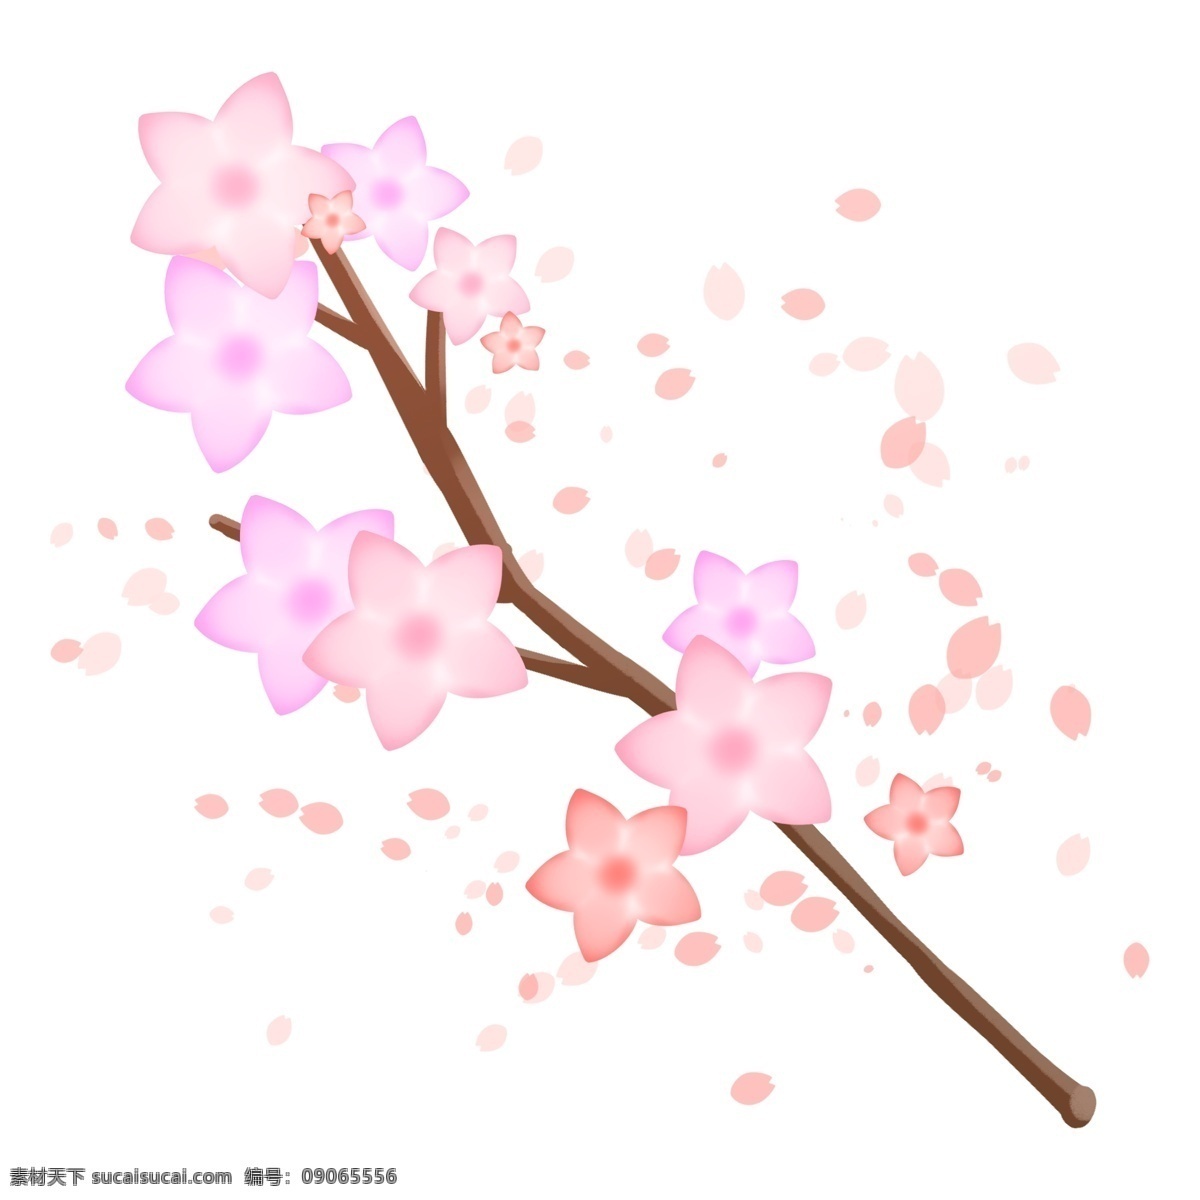 粉色 星星 樱花 插图 飘落的樱花 飞起的花瓣 棕色树枝 星星樱花 樱花设计 完美的樱花 美丽的樱花